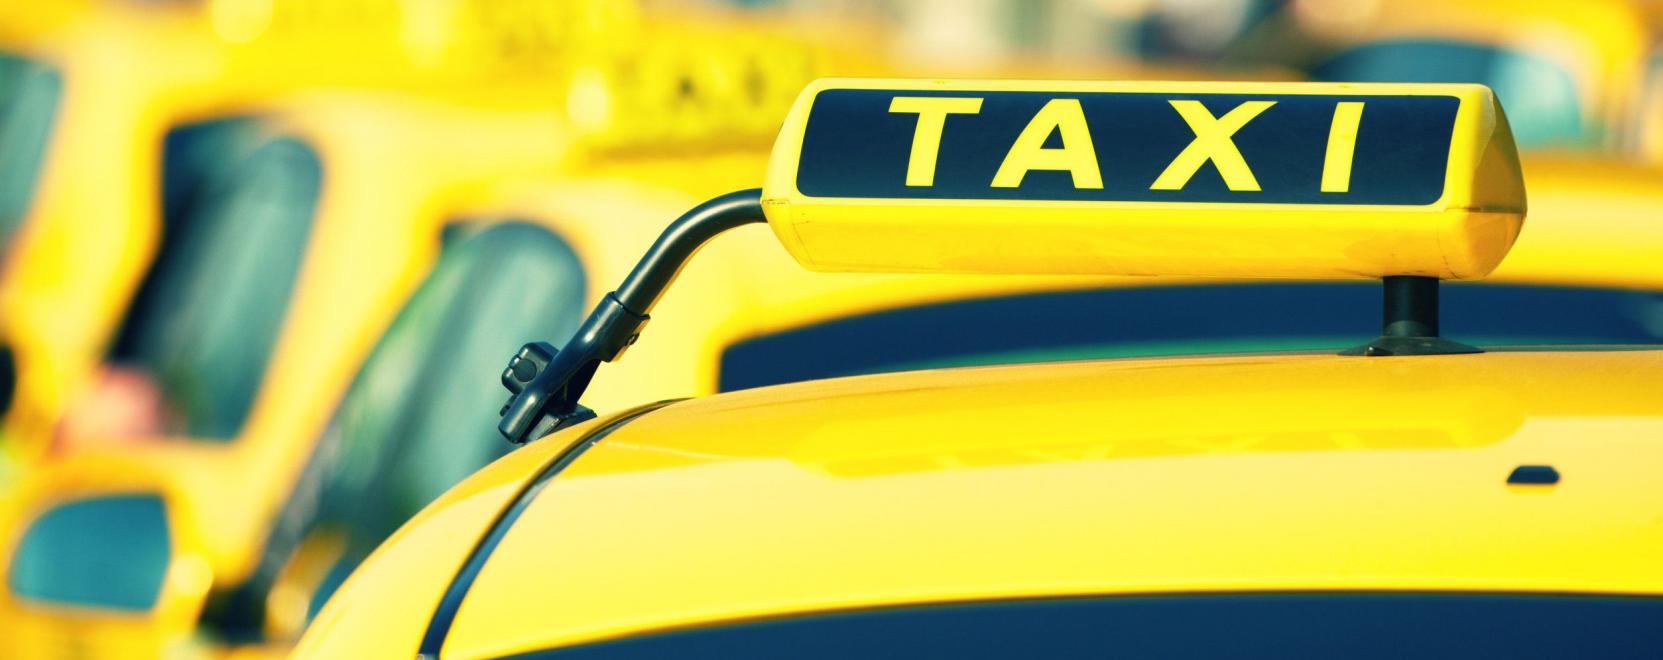 Robotdiszpécser veszi fel a budapesti taxirendelést